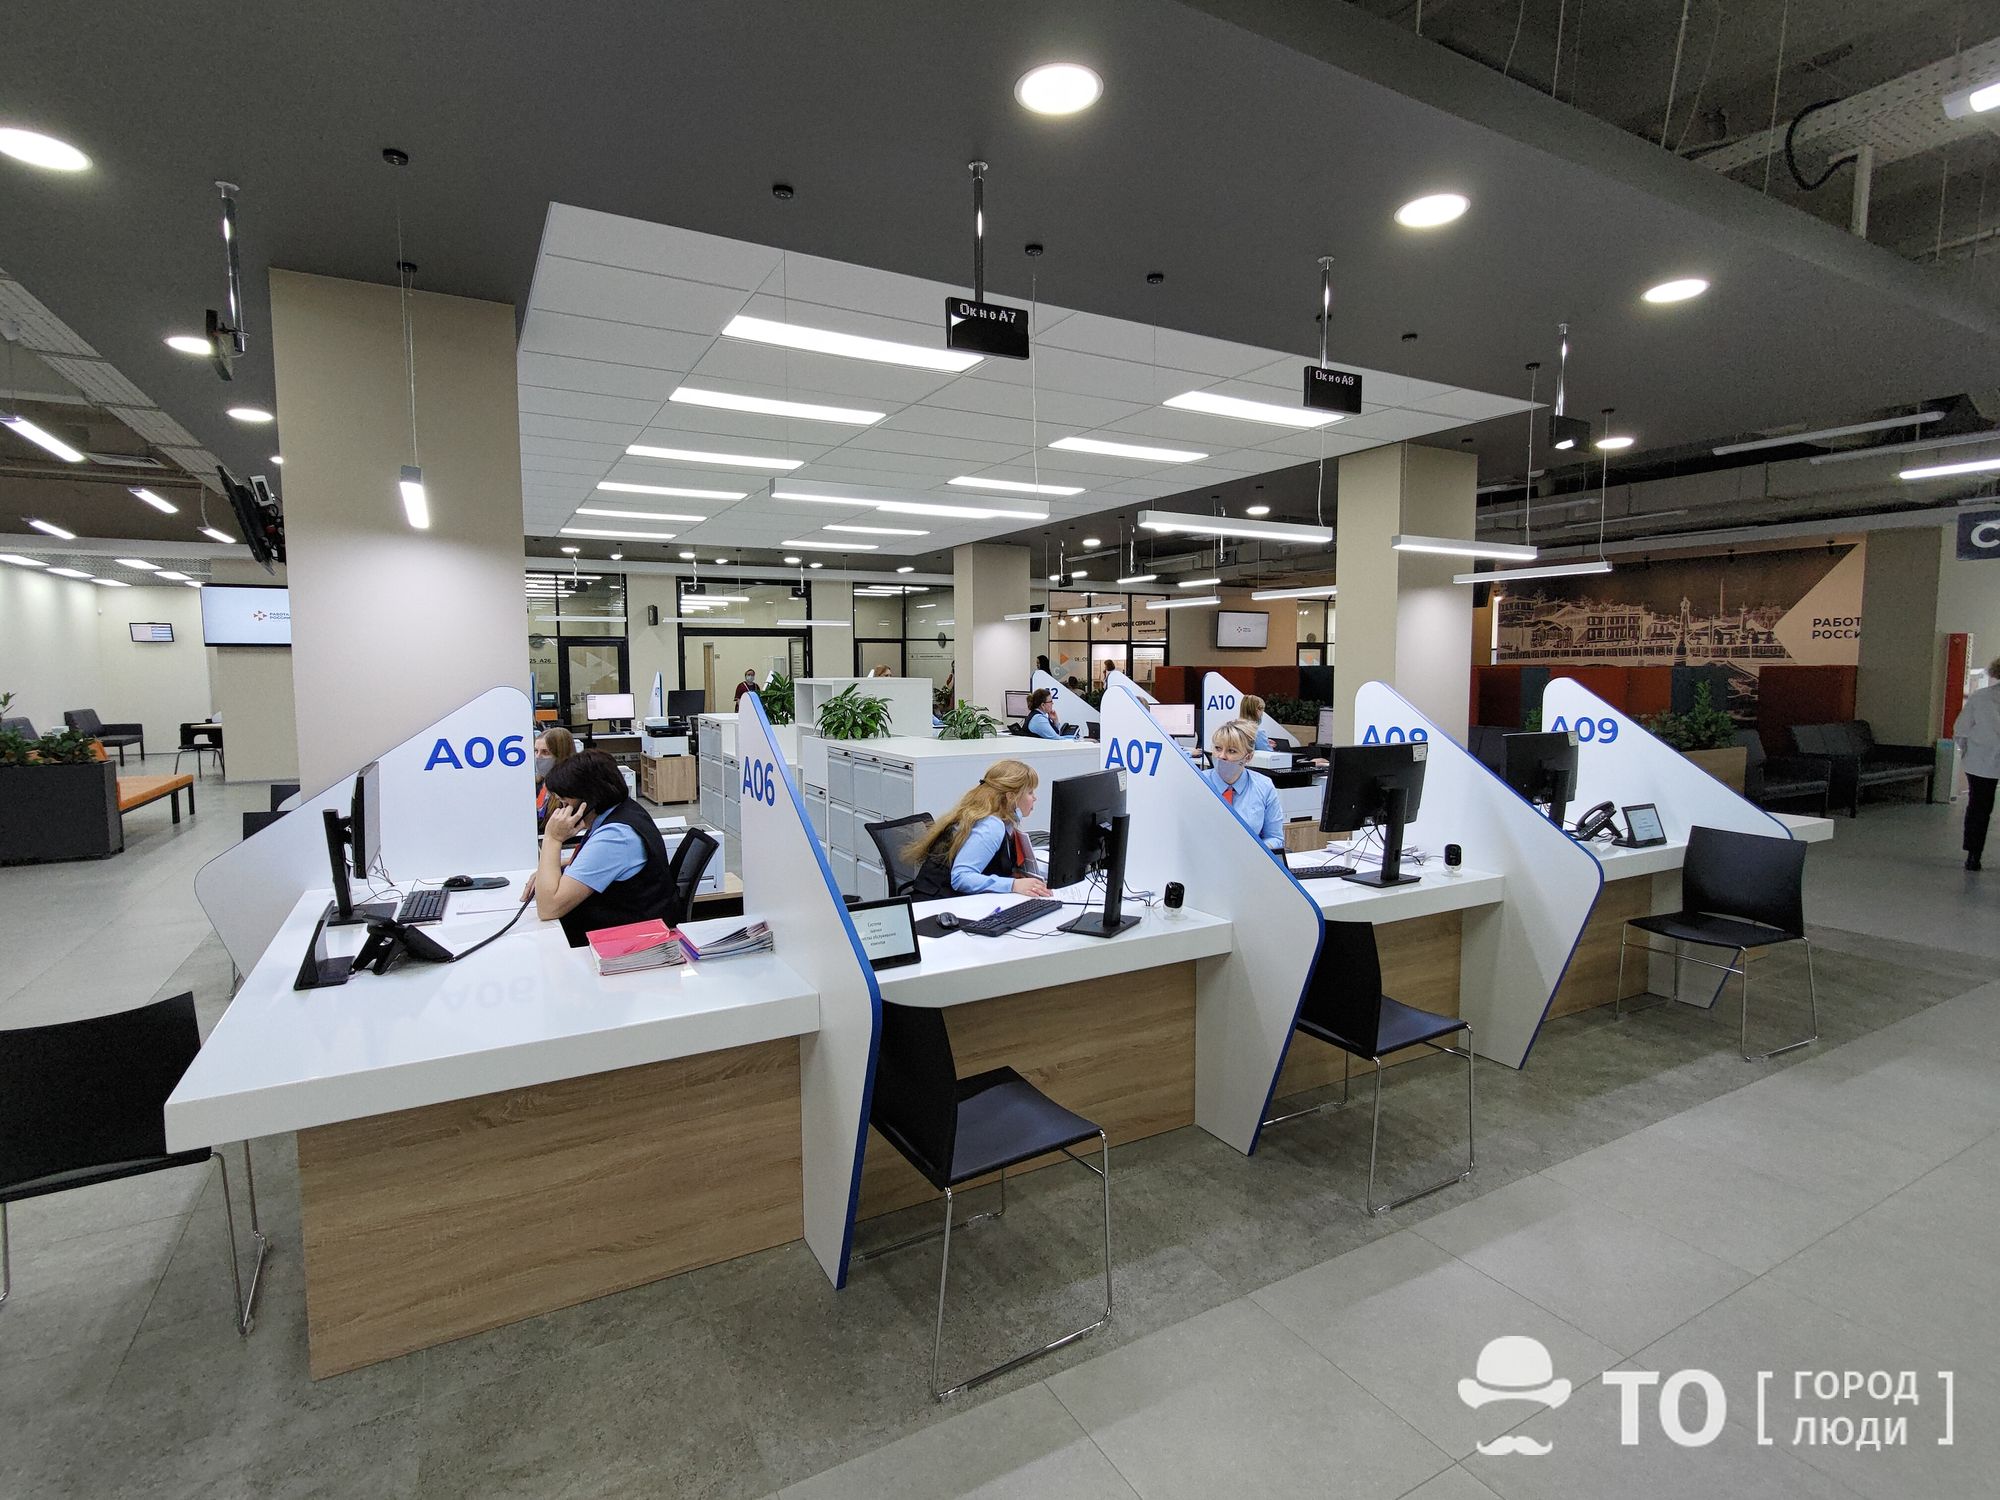 Работа, Томские новости, Сотрудникам томской службы занятости стали доступны вакансии сервиса по поиску работы HeadHunter